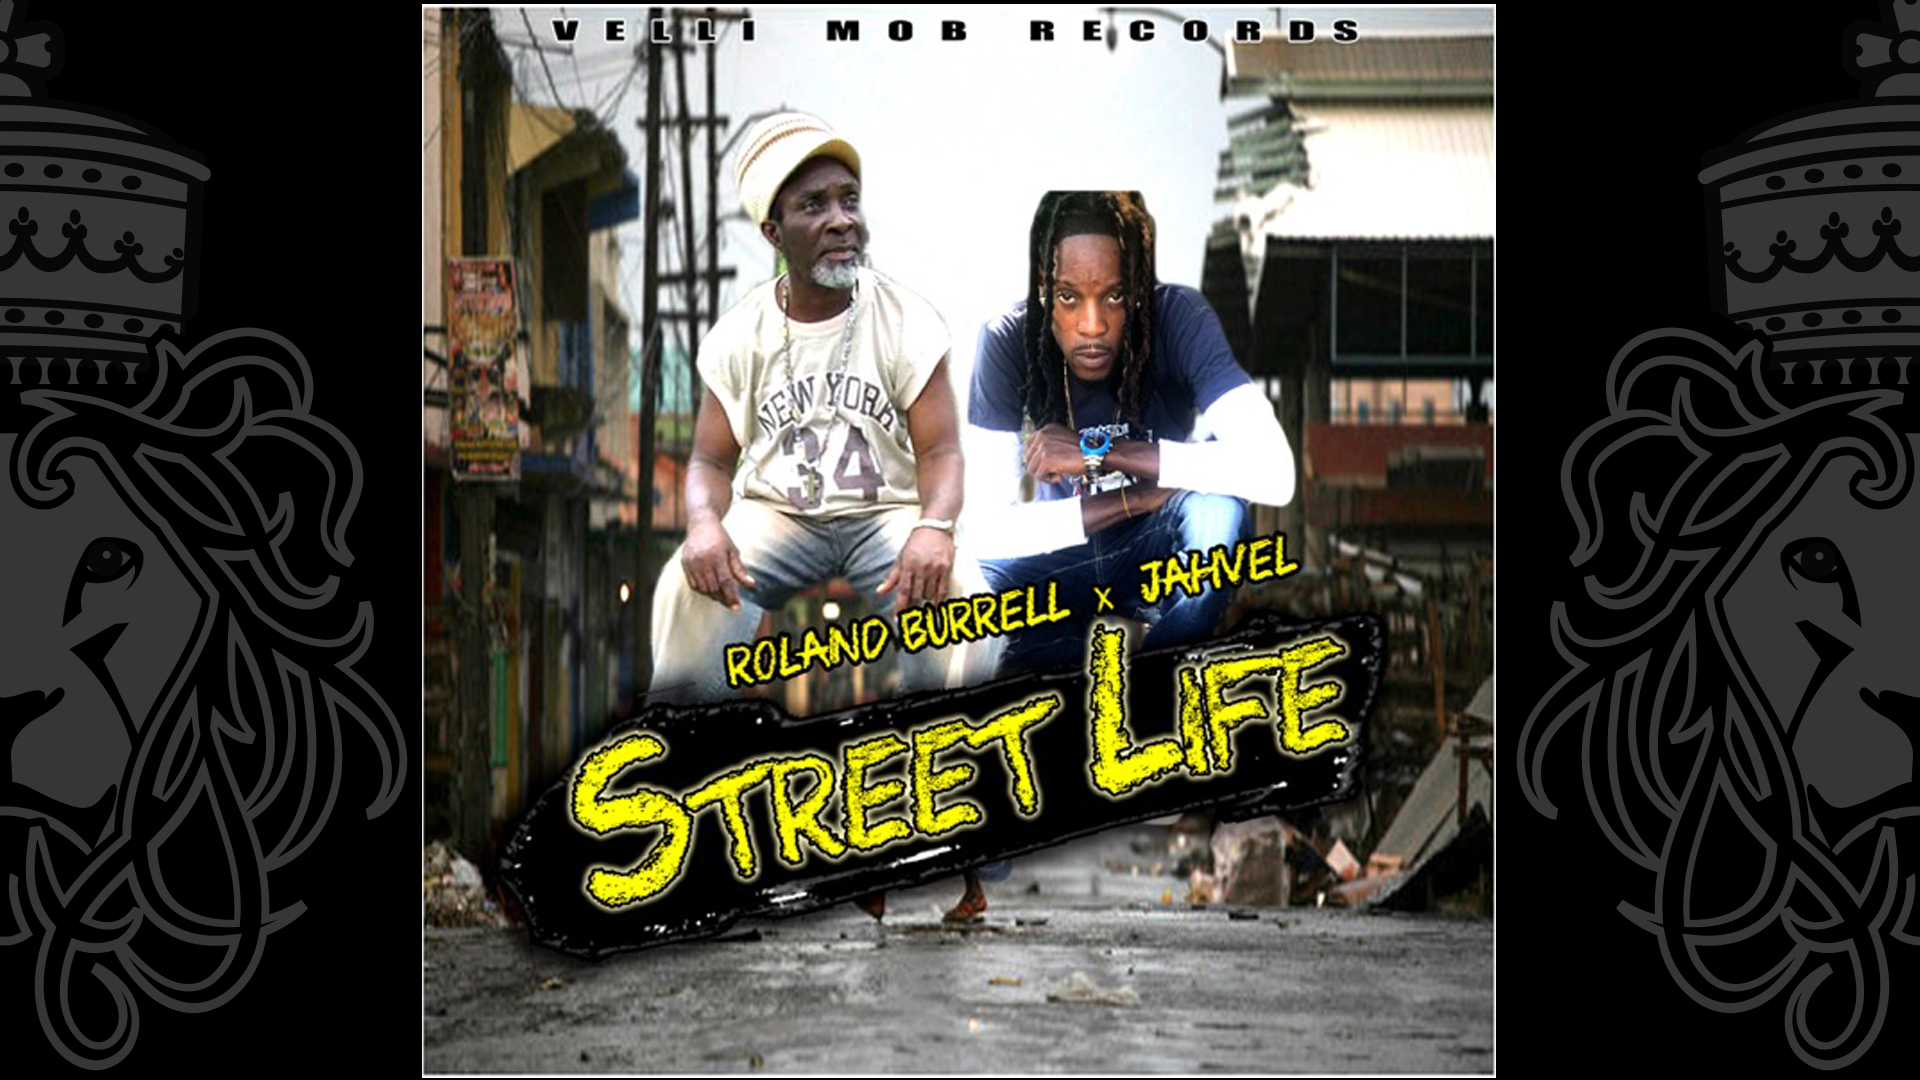 Roland Burrell & Jahvel - Streetlife